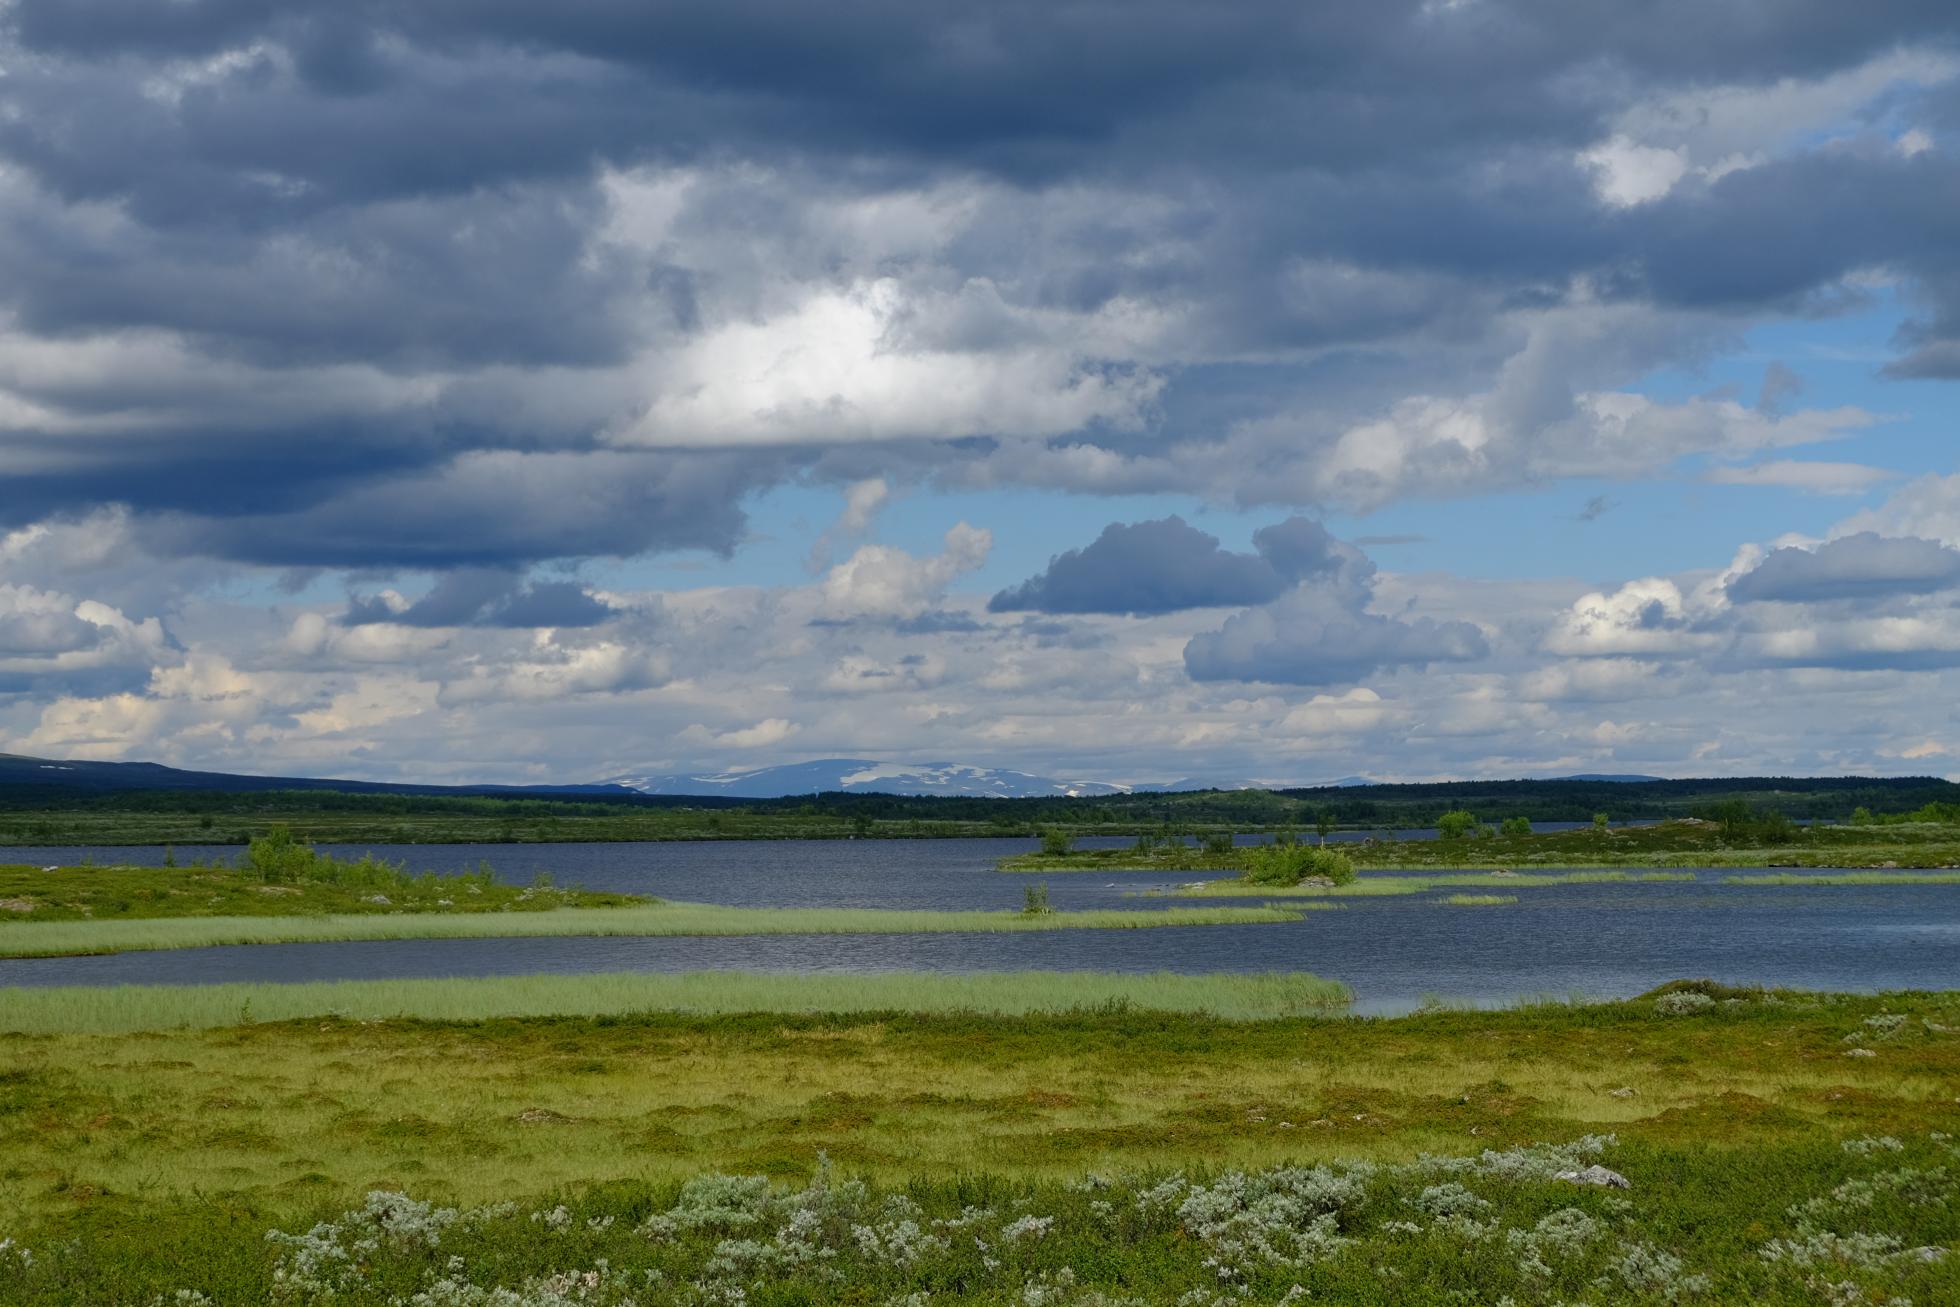 Beeld uit het broedgebied van de Dwergganzen in Lapland, met z'n grote waterpartijen, grazige vegetaties, broedeilandjes en...muggen!